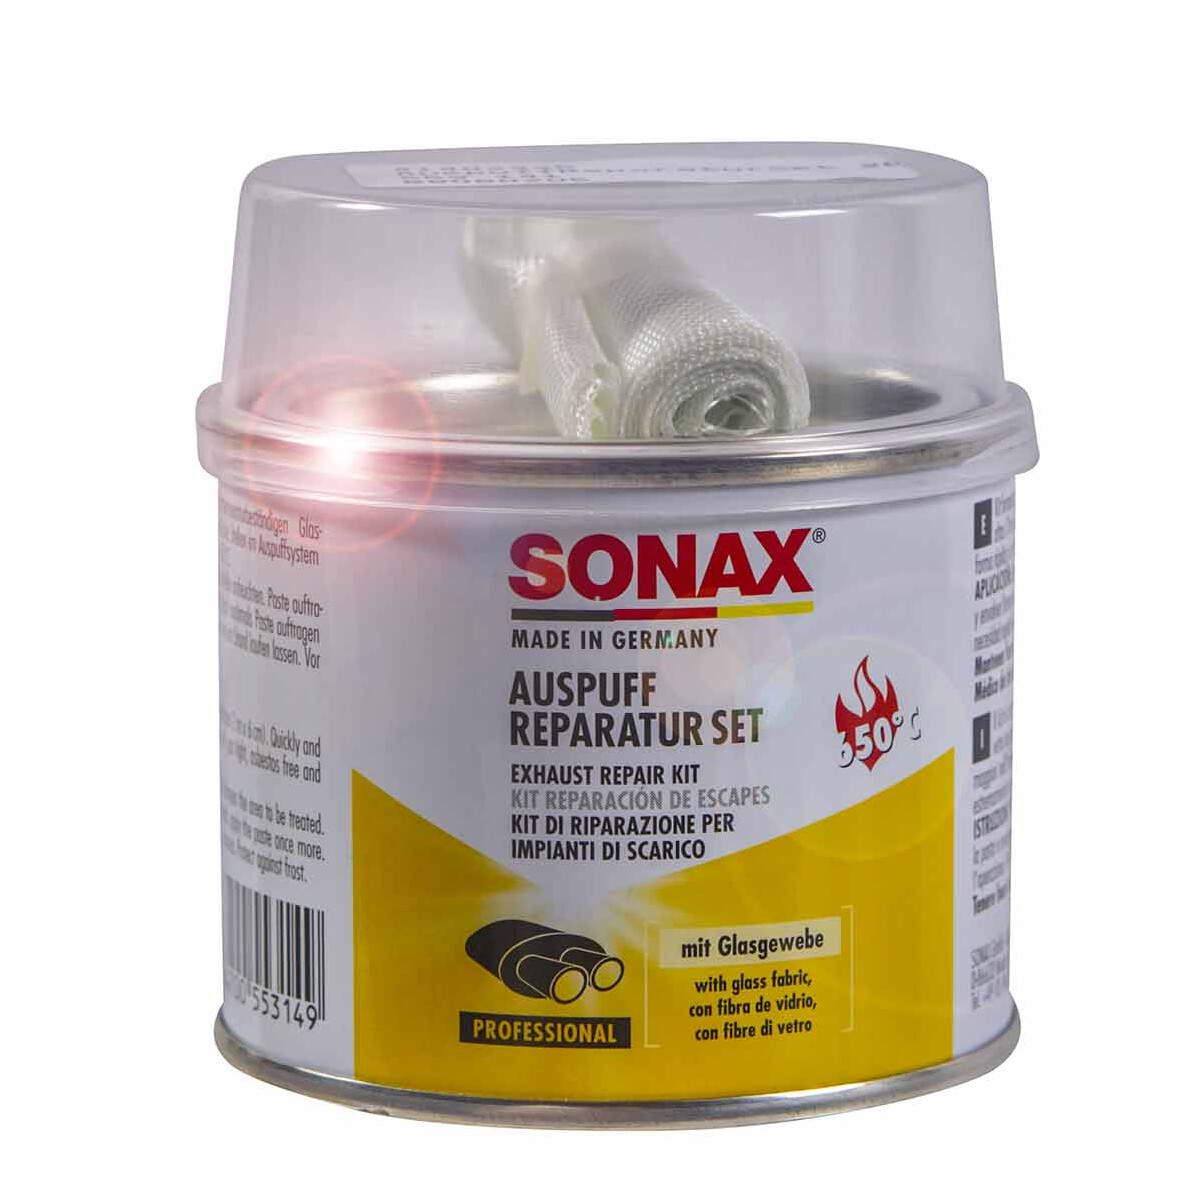 Original Sonax Auspuff Reparatur Set mit Glasgewebe 200g - , 7,15 €